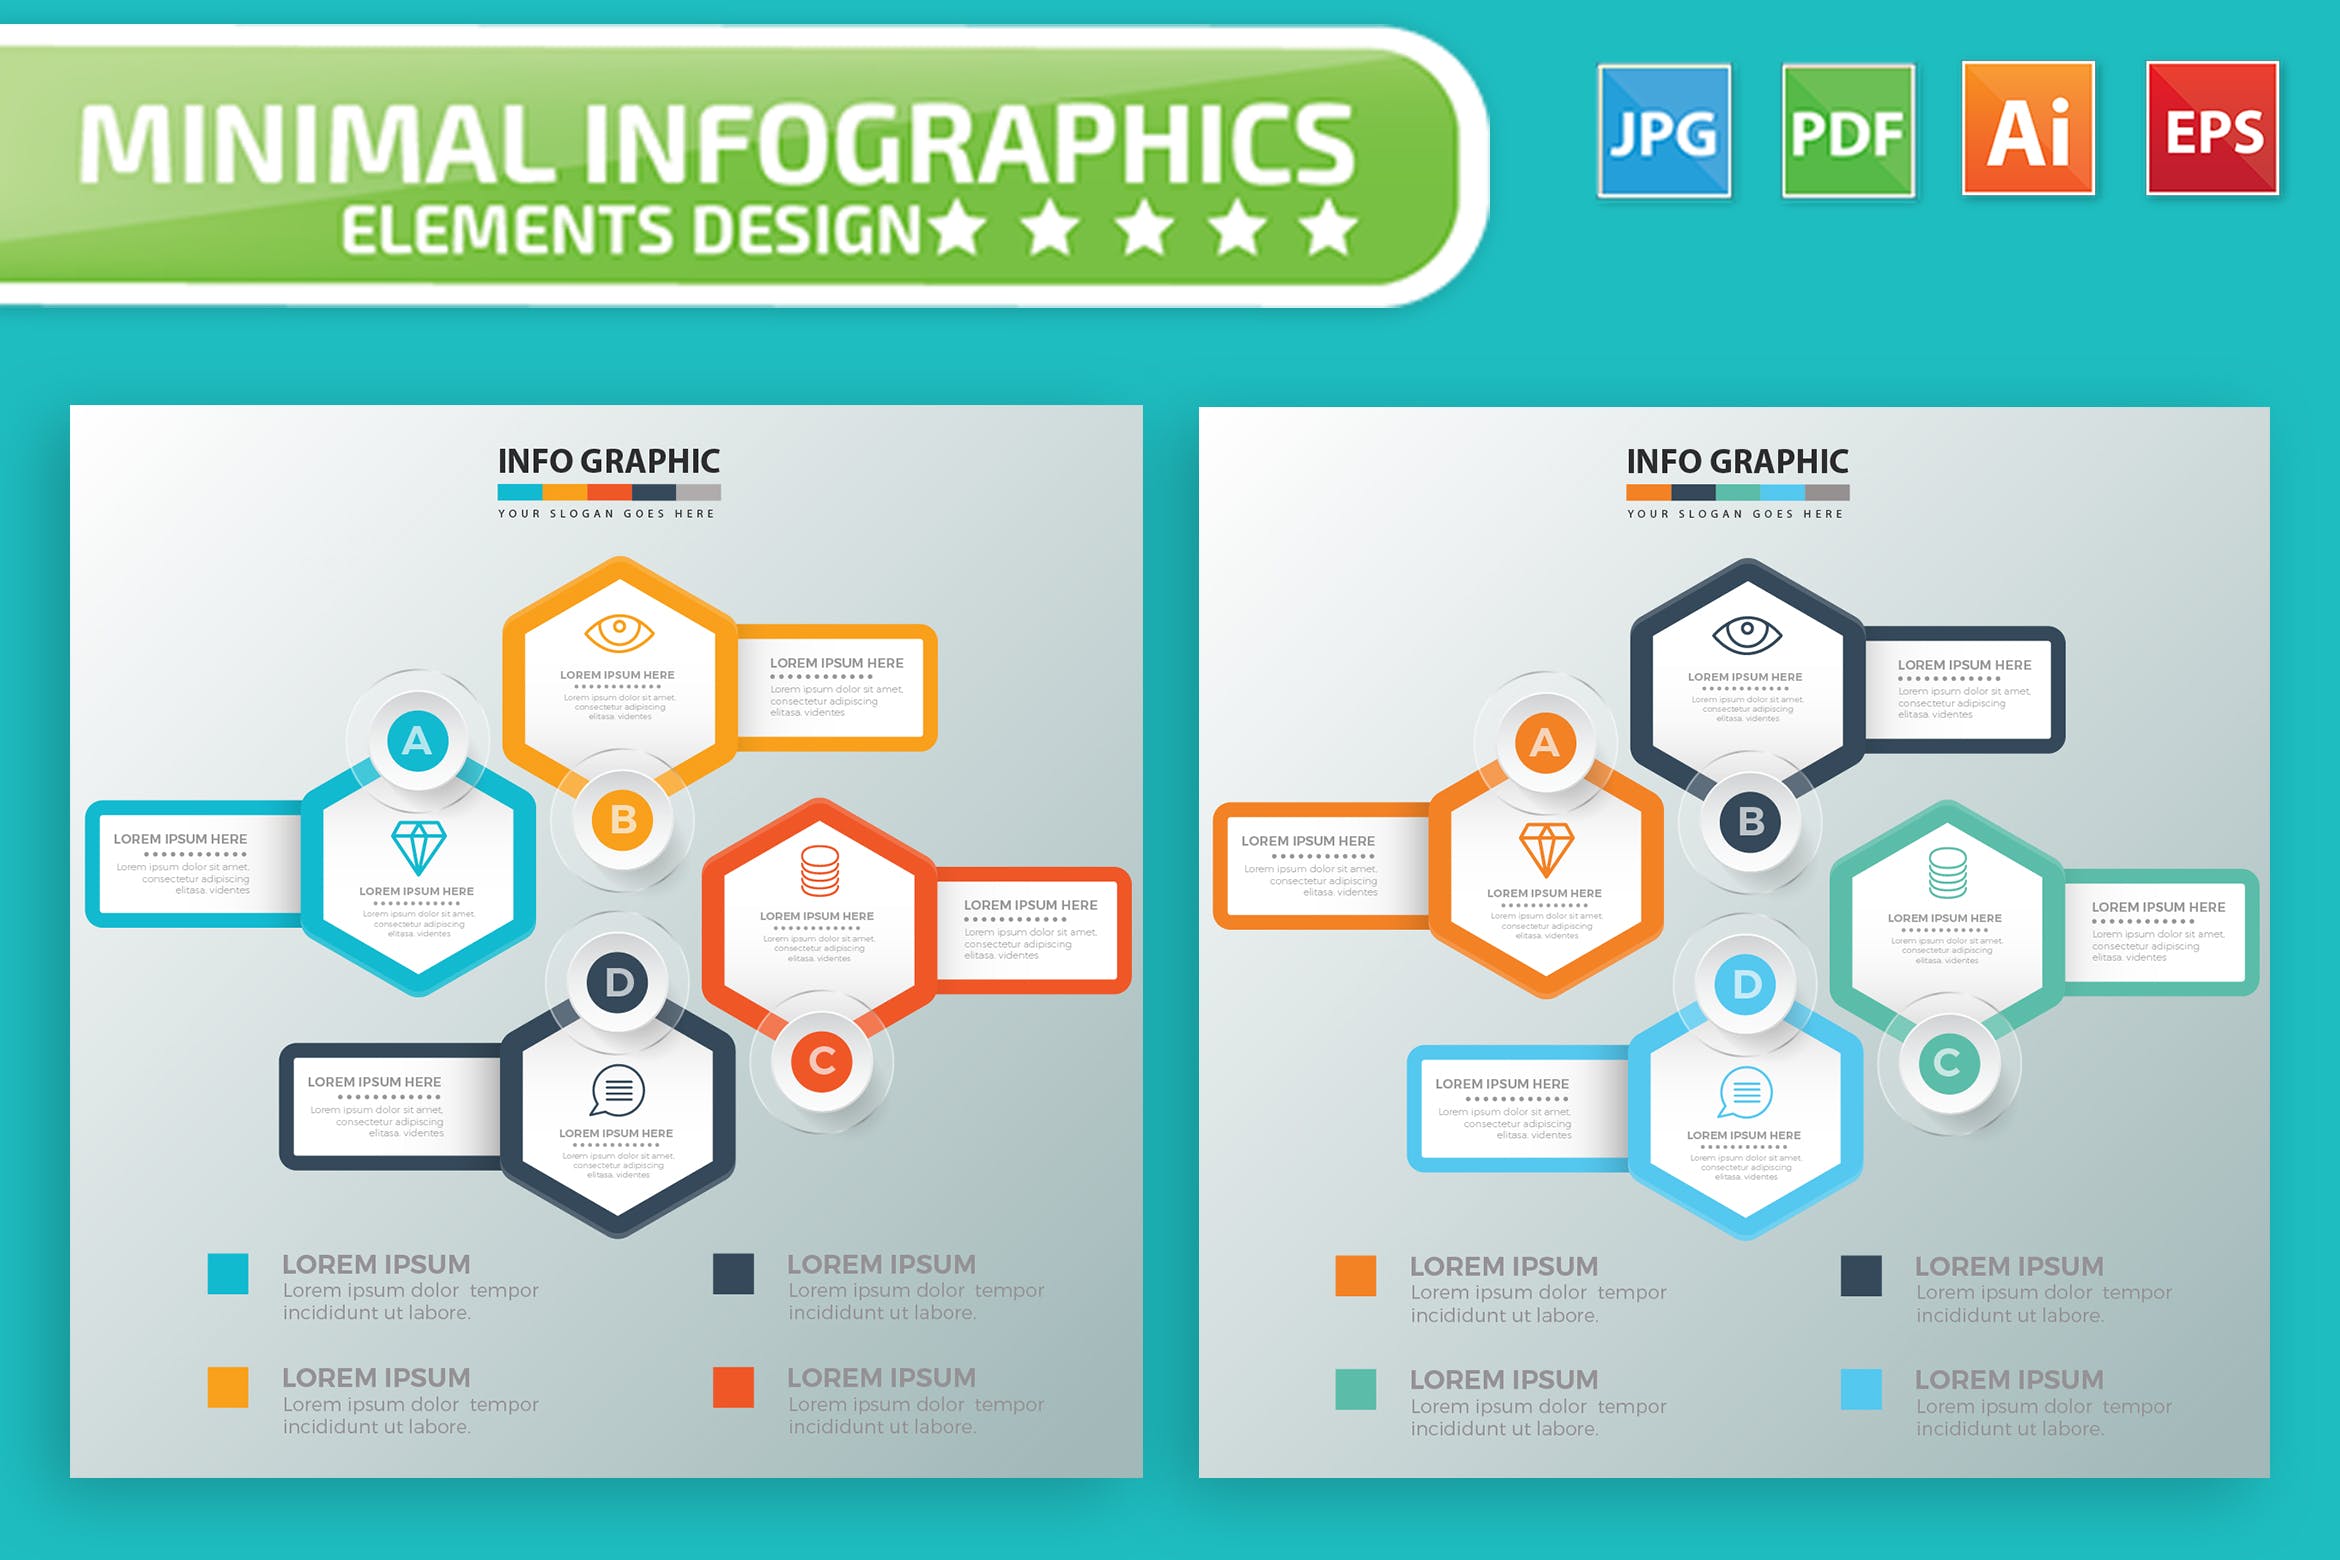 要点说明/重要特征信息图表矢量图形16设计素材网精选素材v7 Infographic Elements Design插图